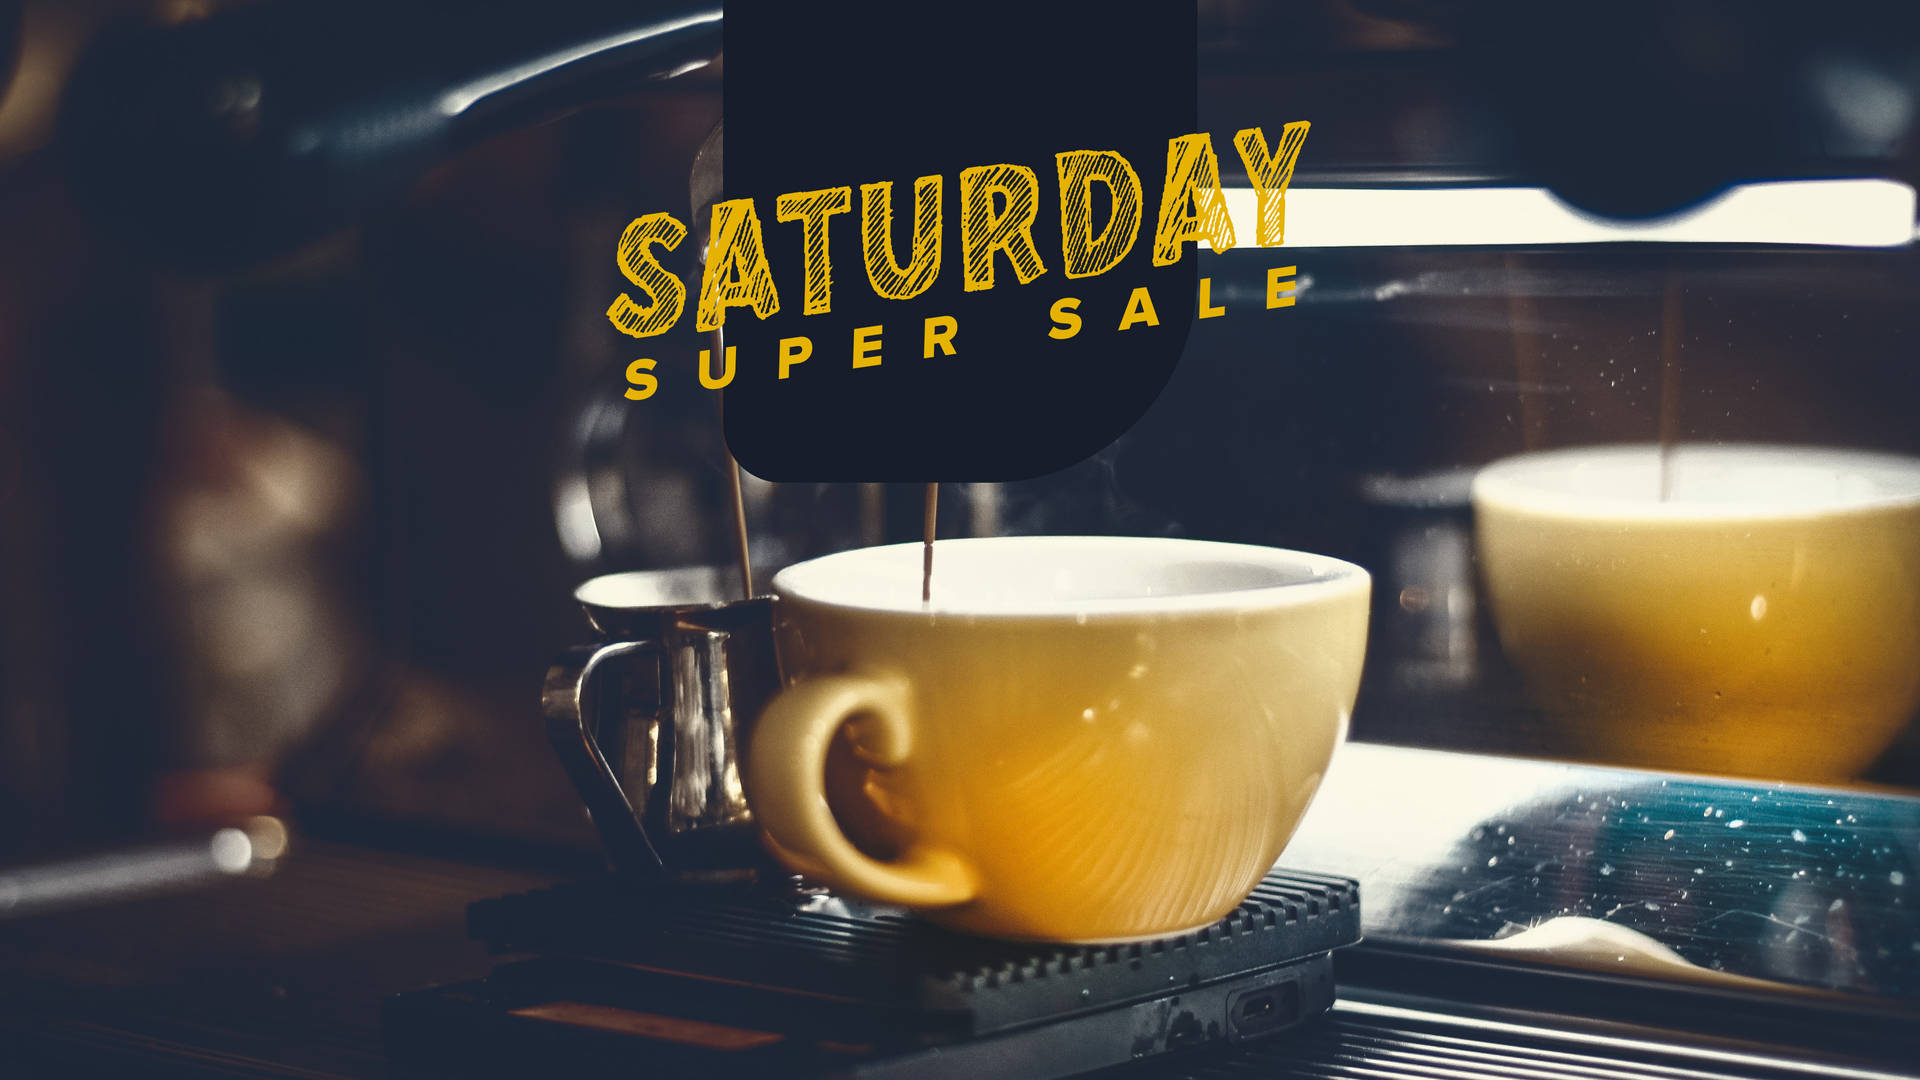 Coffee-Themed Super Saturday Sale Wallpaper